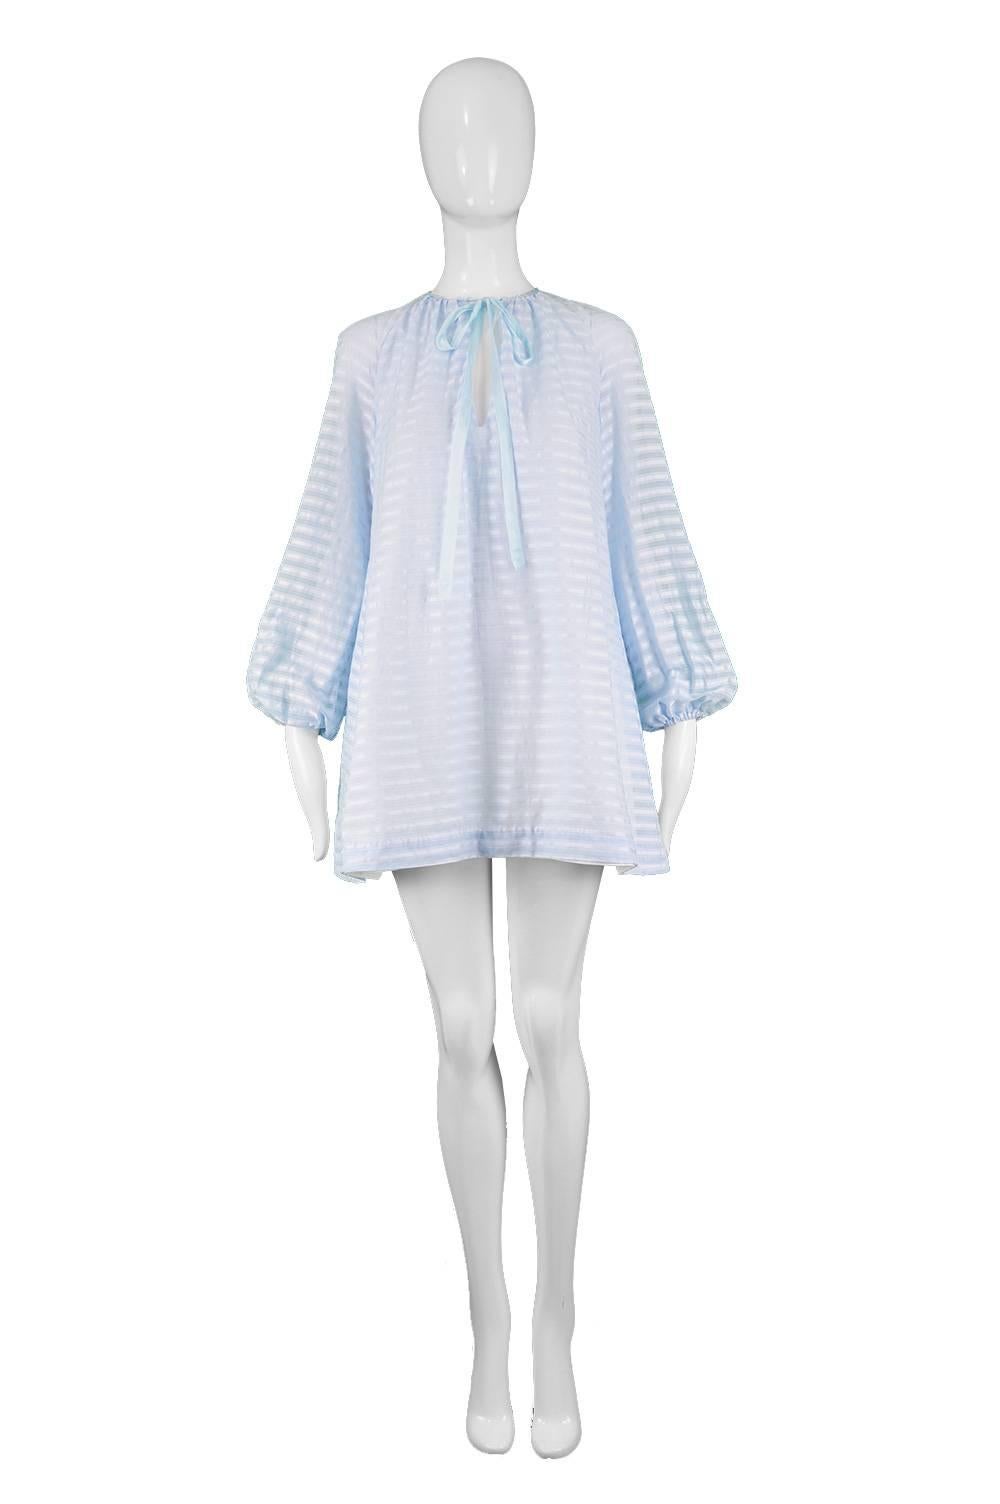 Rare Twiggy Label Sky Blue Cotton Striped Vintage Mini Mod Shift Dress, 1960s

Estimated Size: UK 8/ US 4/ EU 36. Please check measurements. 
Bust - 32” / 81cm
Waist - 36” / 91cm
Hips - 42” / 106cm
Length (Shoulder to Hem) - 30” / 76cm
Sleeve Pit to